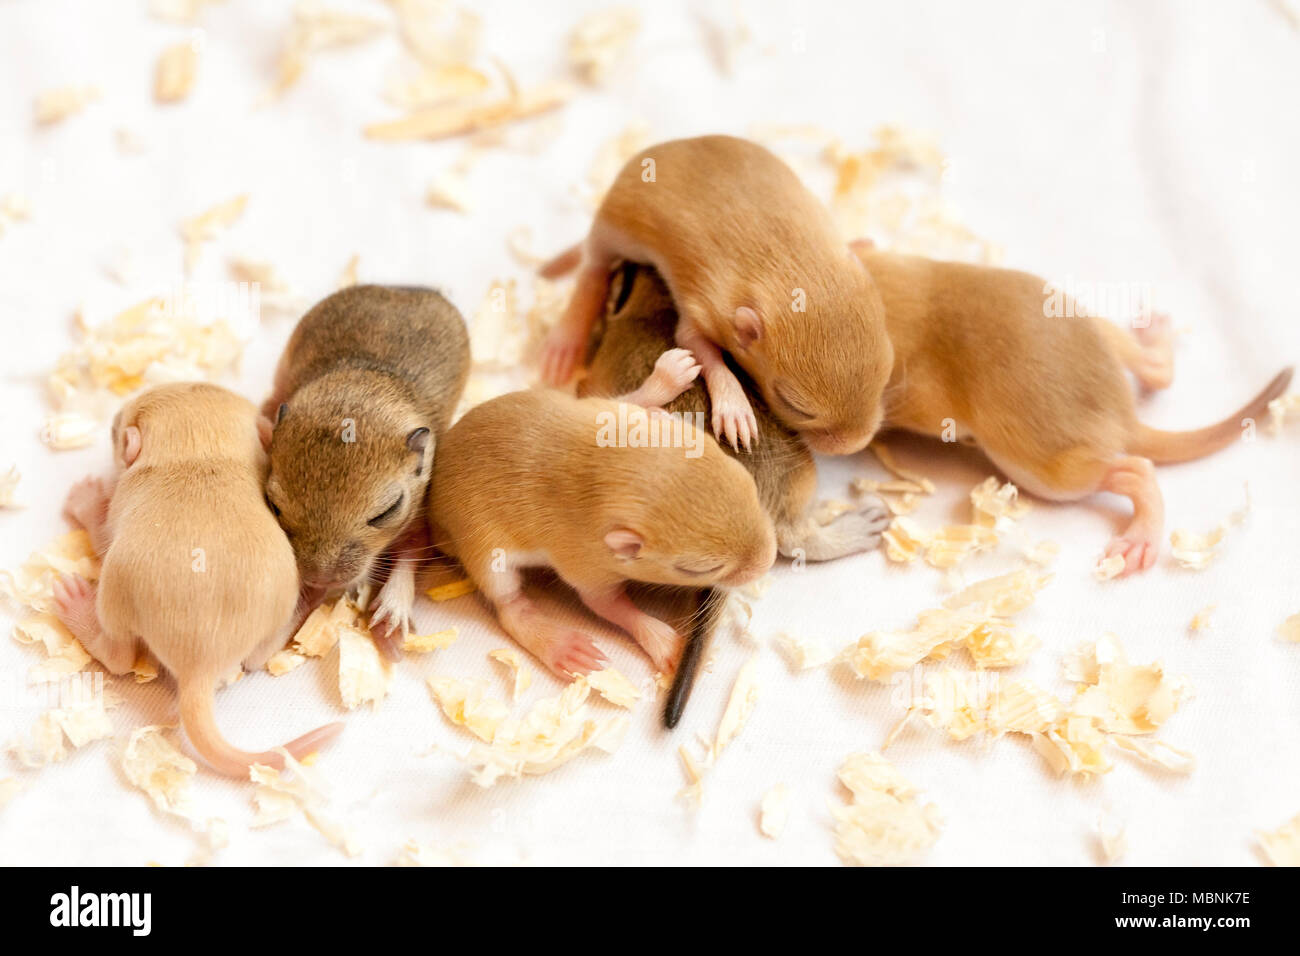 Gruppe von lustigen kleinen niedlichen schlafenden Mäuse Babys. Makro Bild. Stockfoto